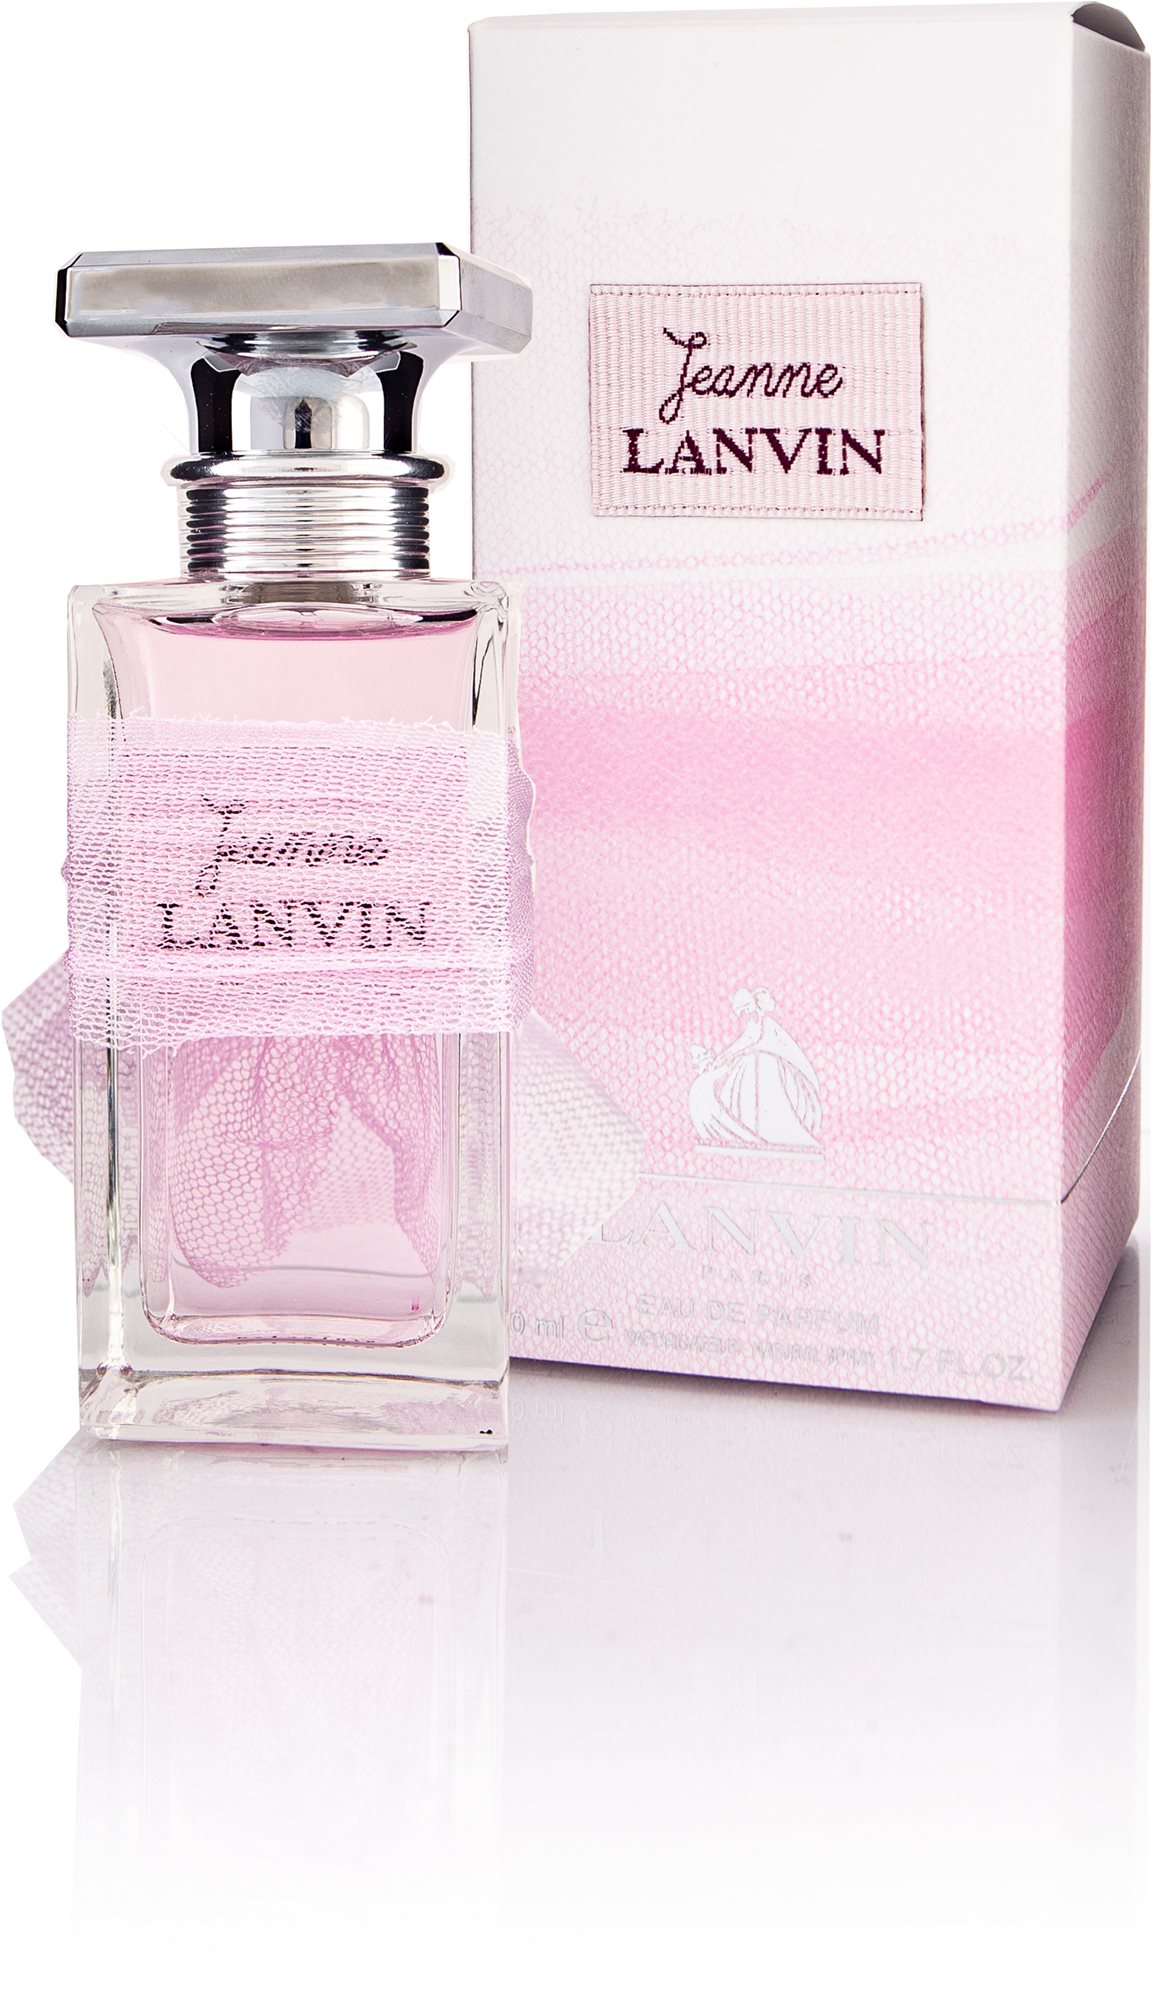 Lanvin Jeanne Lanvin Eau de Parfum hölgyeknek 50 ml